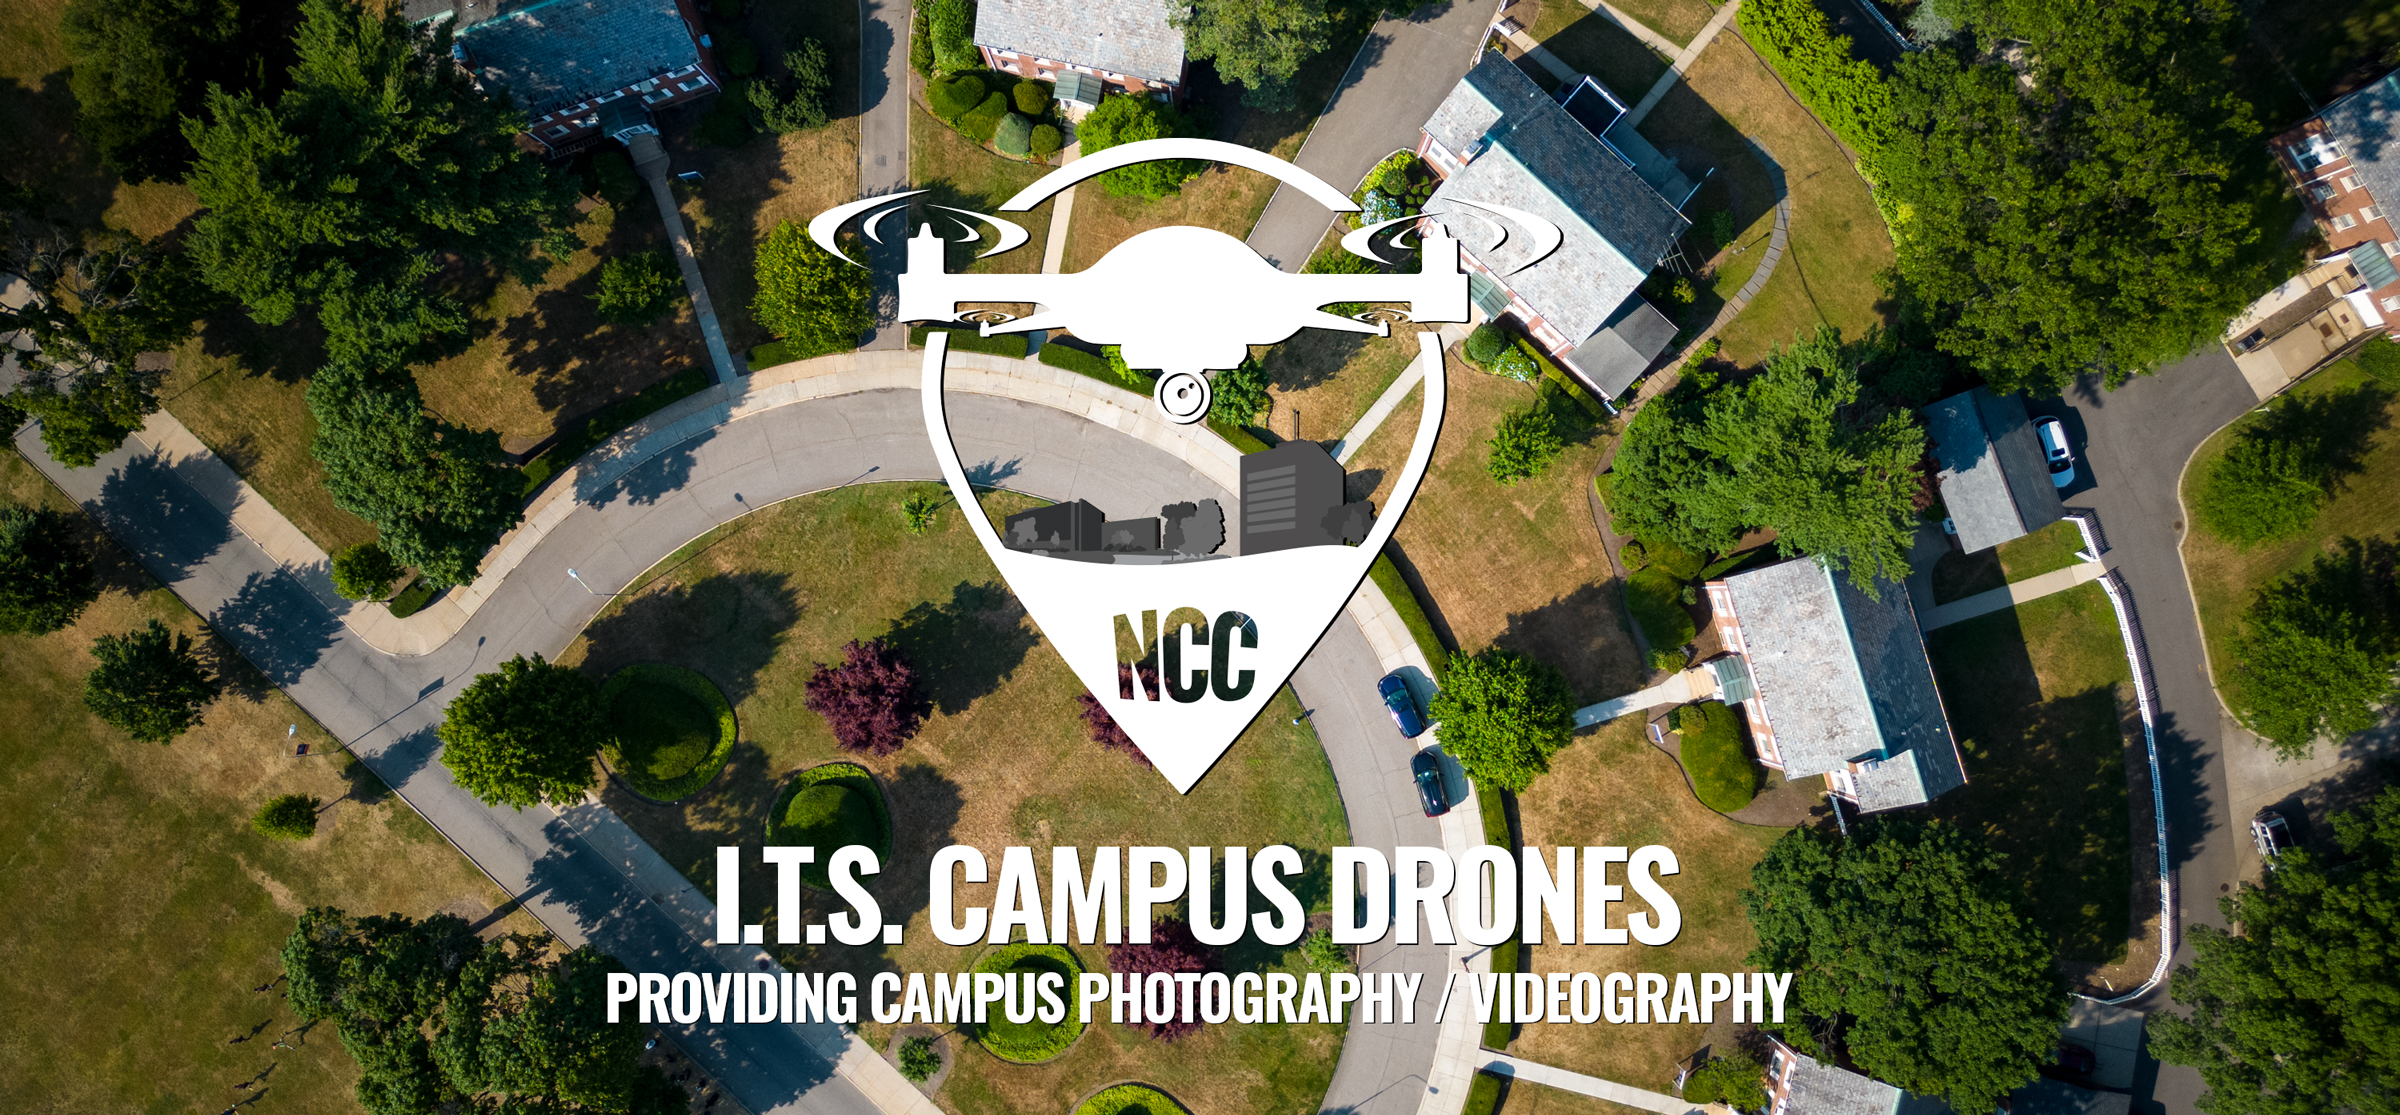 I.T.S. Campus Drones